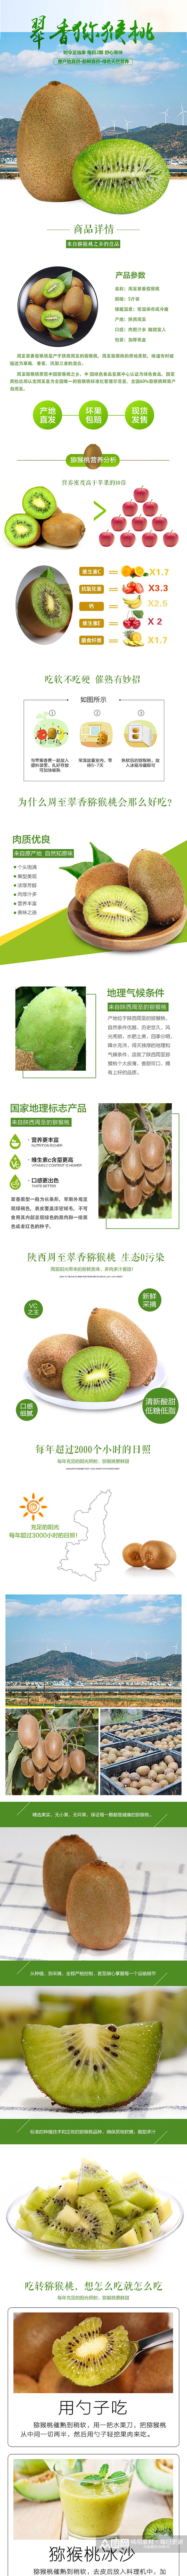 电商淘宝食品水果生鲜猕猴桃详情页素材